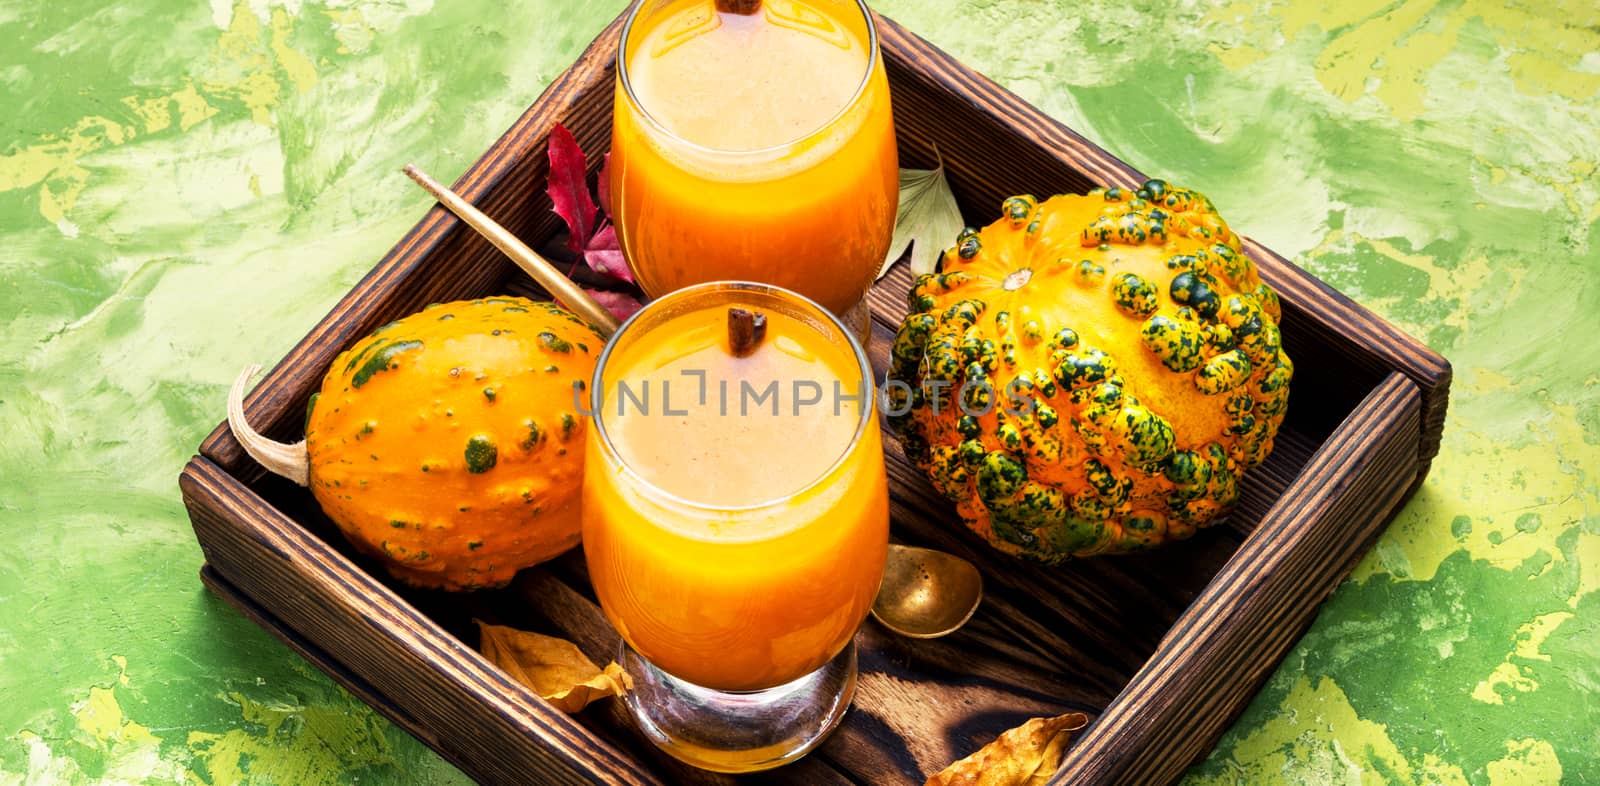 Beverage with pumpkins by LMykola